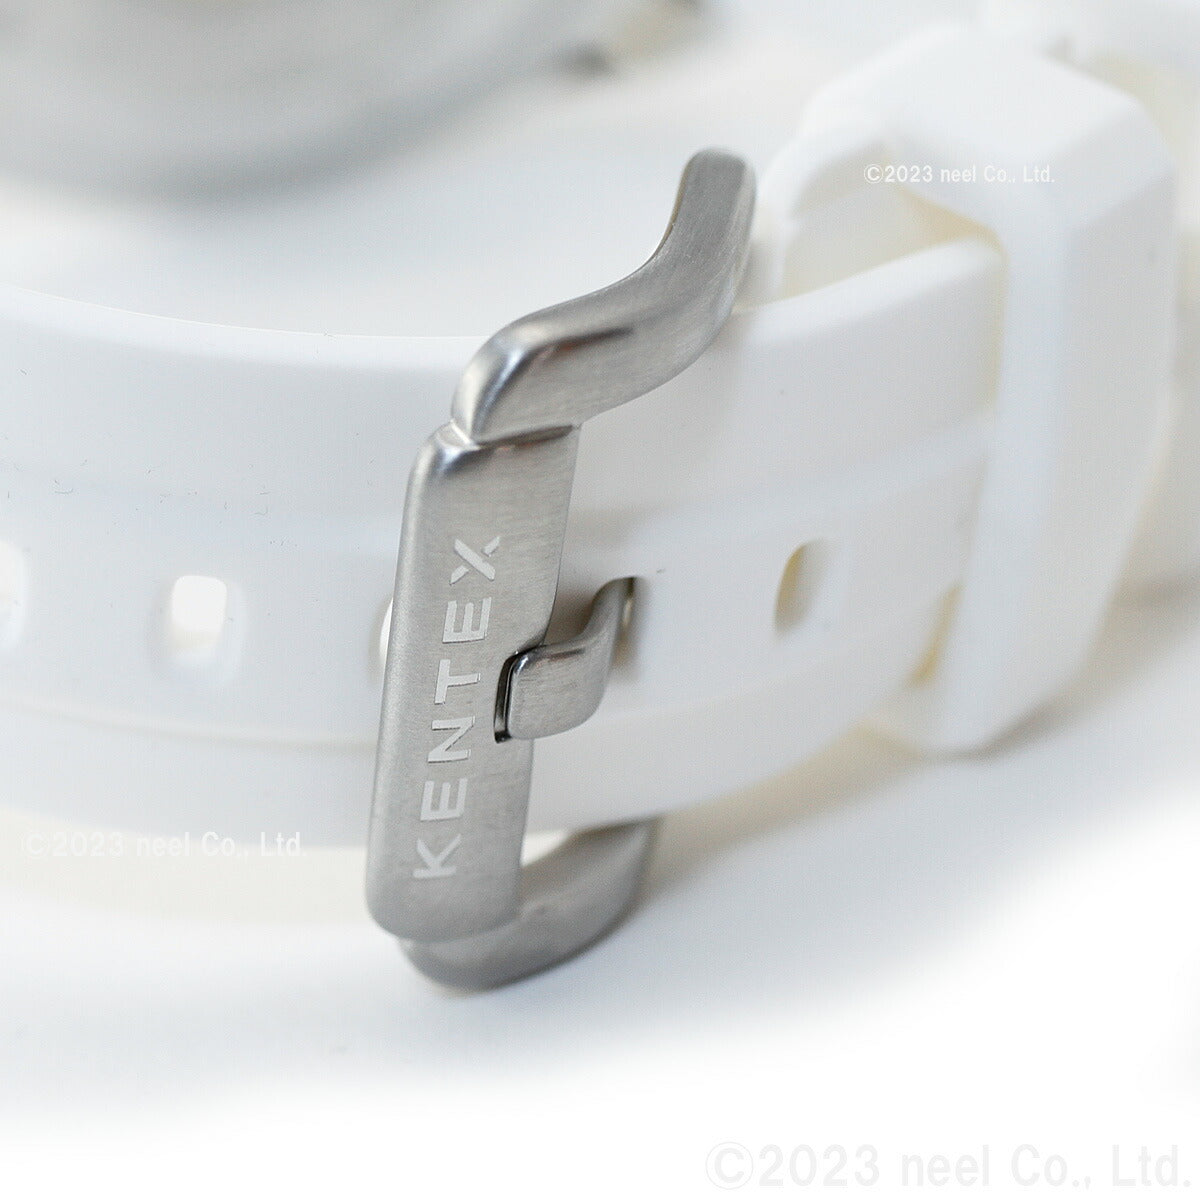 【5月から値上げ！】ケンテックス KENTEX 限定モデル 腕時計 時計 メンズ マリンマン シーホースII 日本製 S706M-15